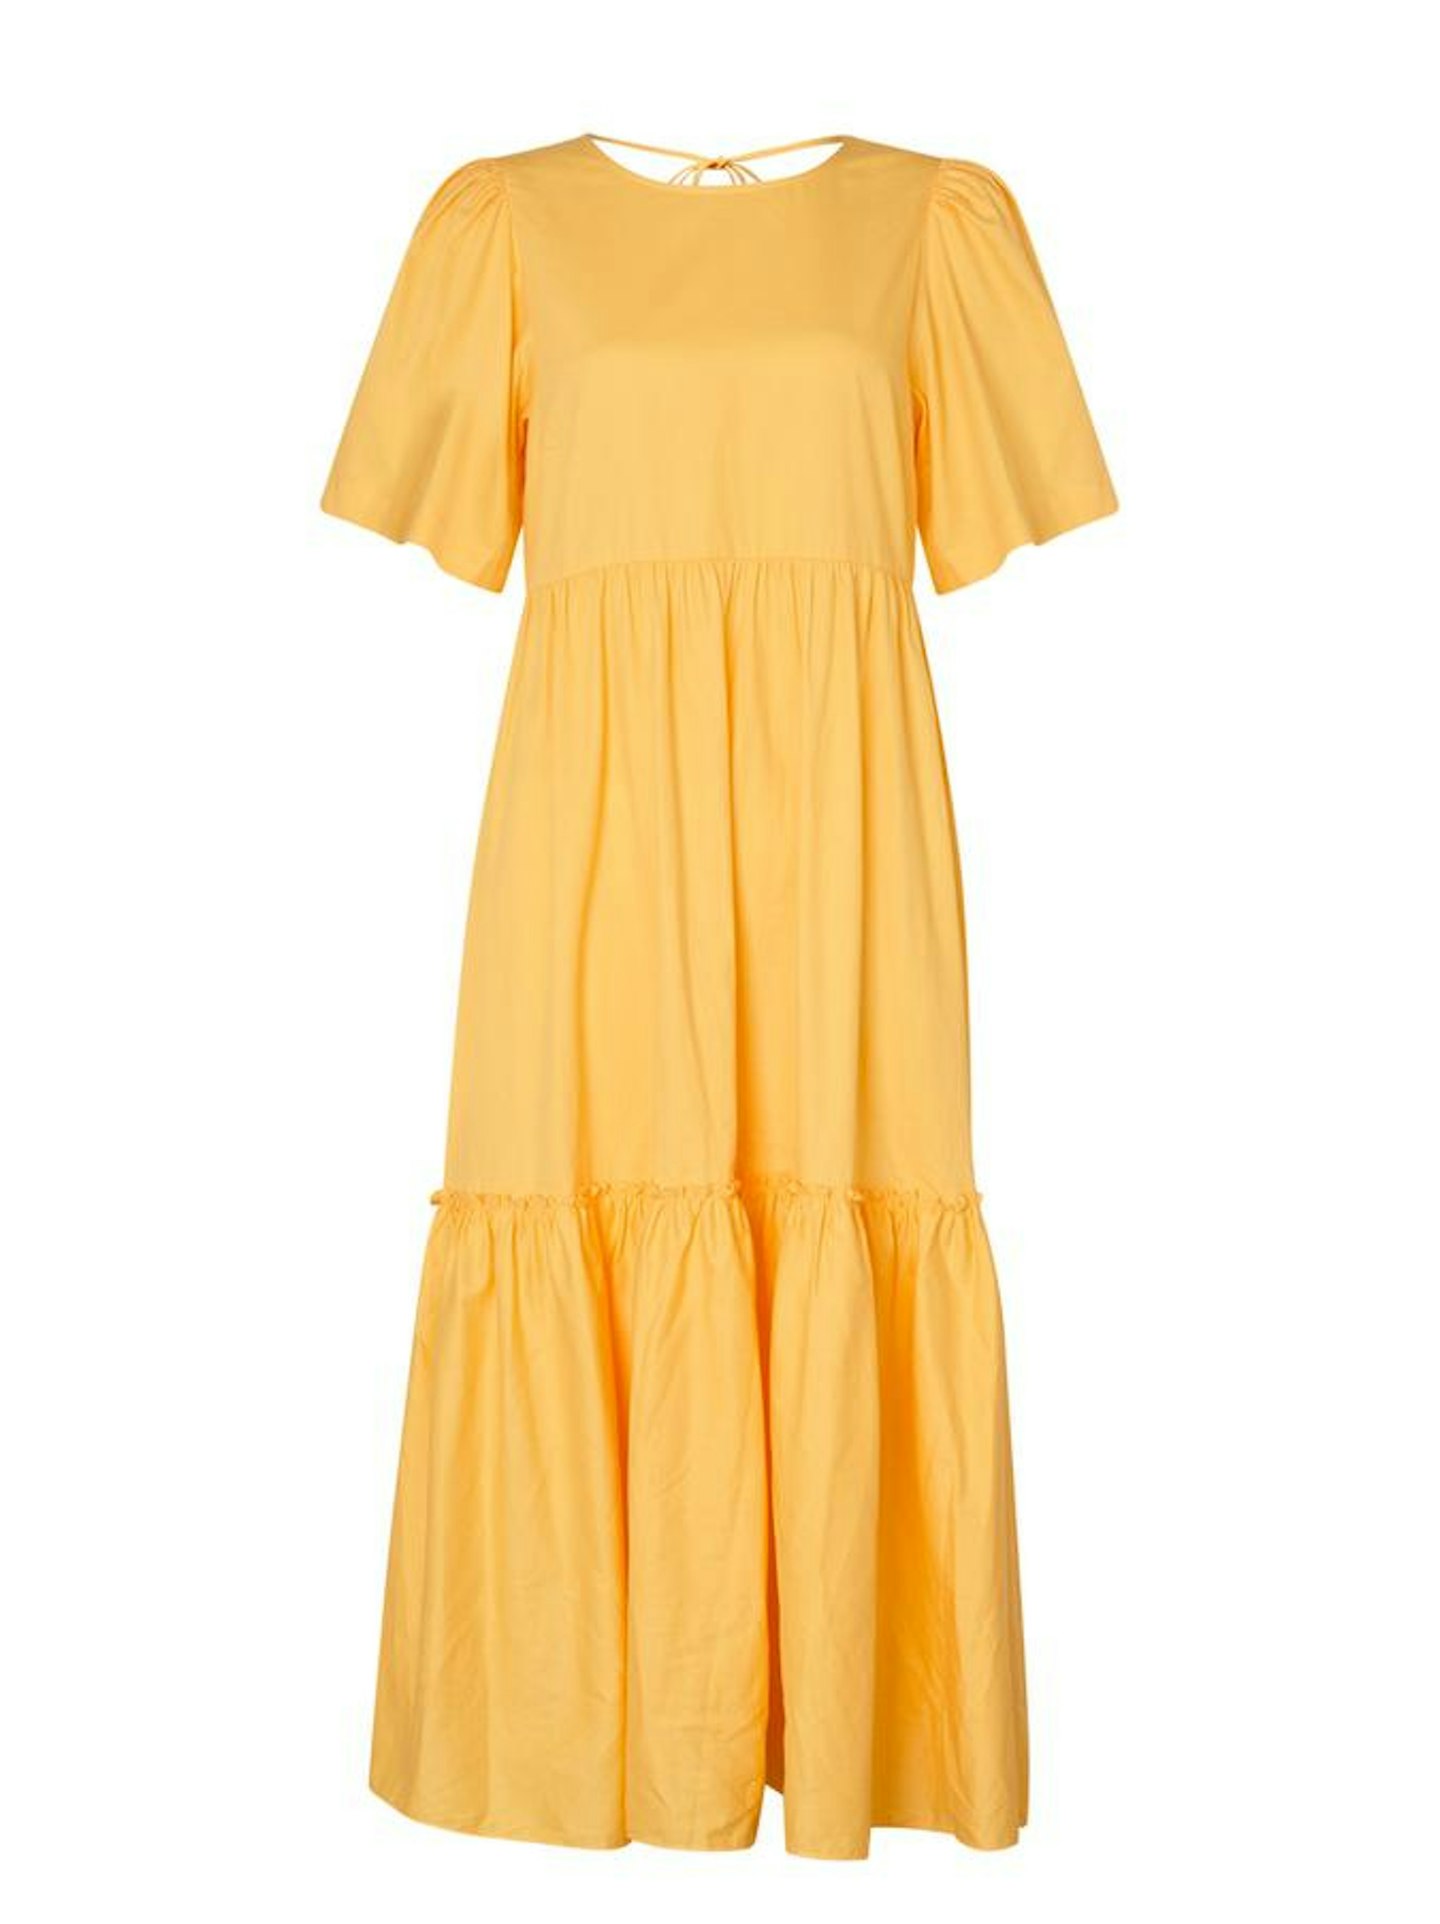 Kitri, Yellow Cotton Dress, £150